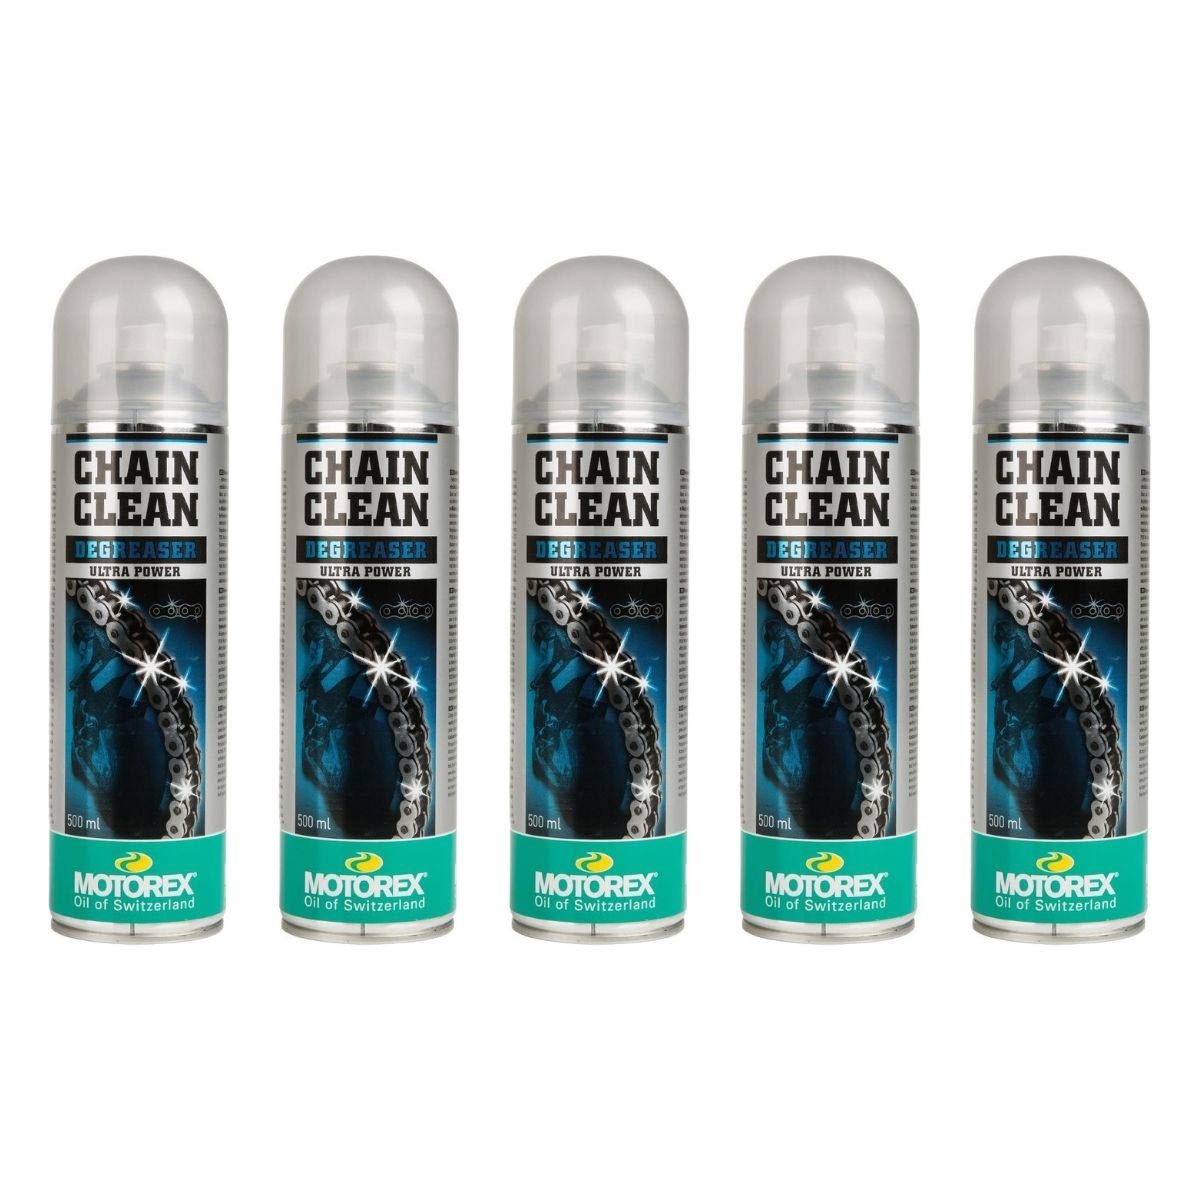 Motorex Chain Cleaner  Set: 5 pieces, 500 ml each